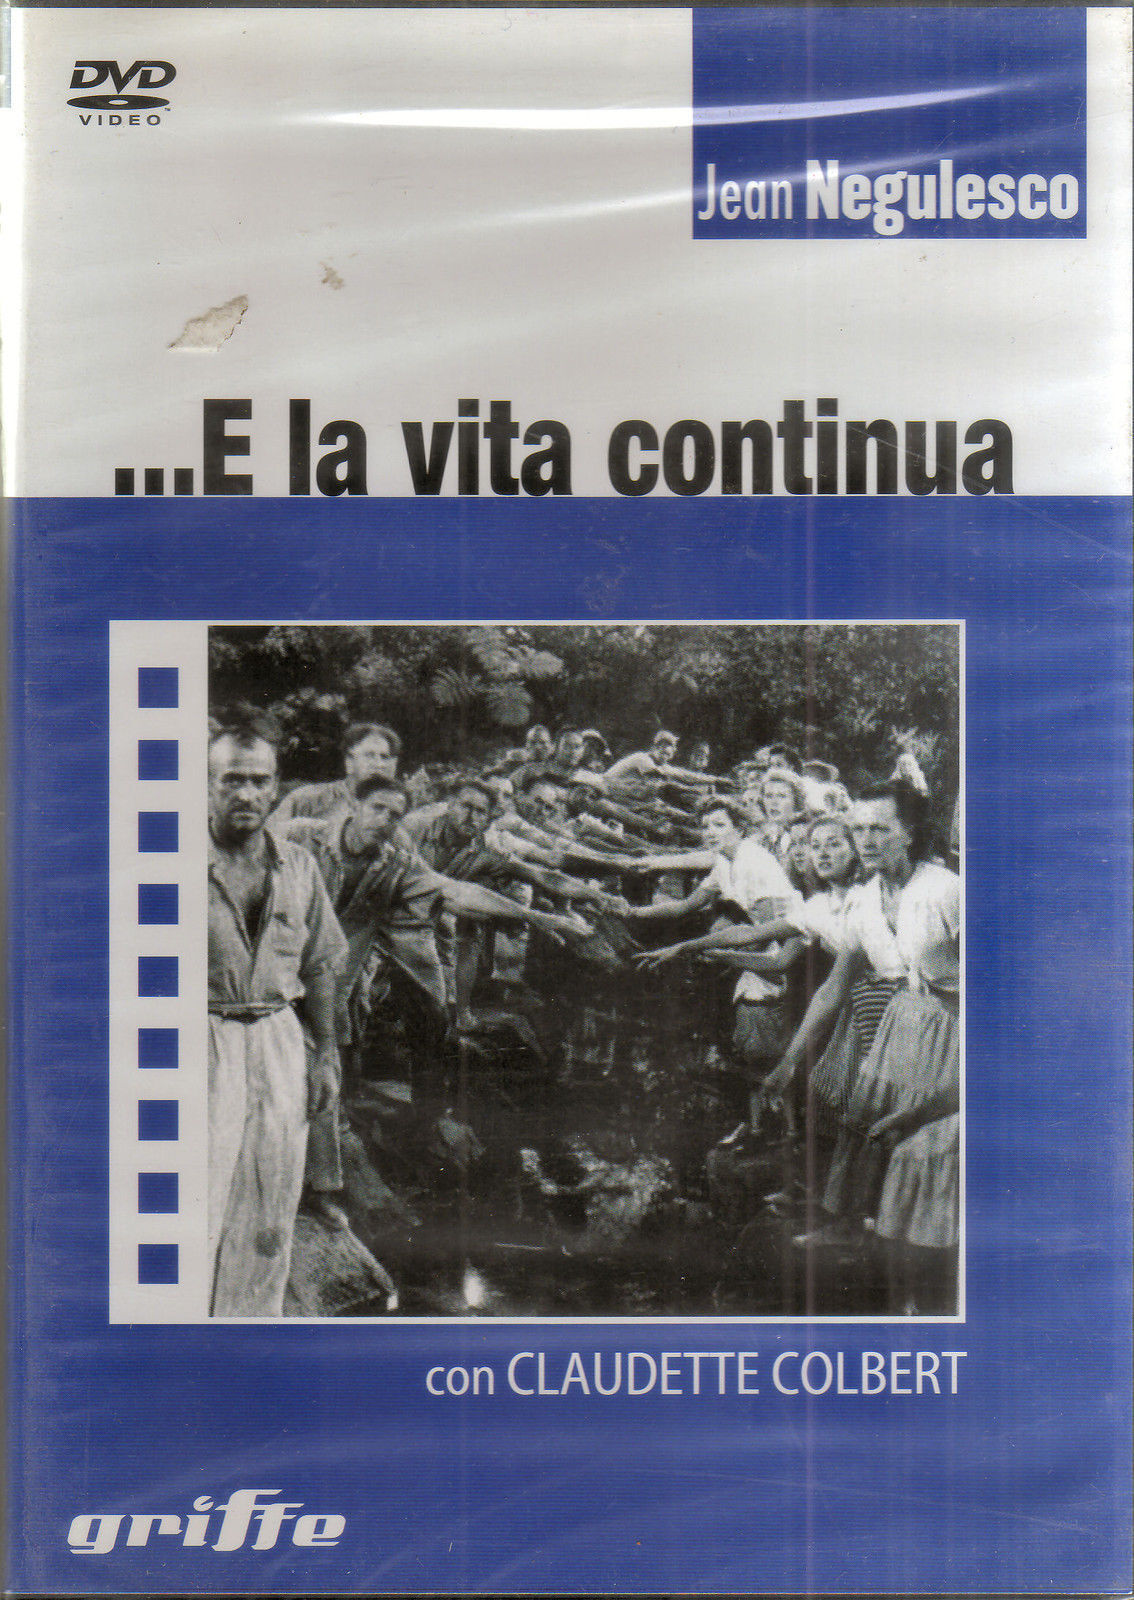 E LA VITA CONTINUA -Jean Negulesco - GRIFFE - 2007 - DVD - M dvd usato